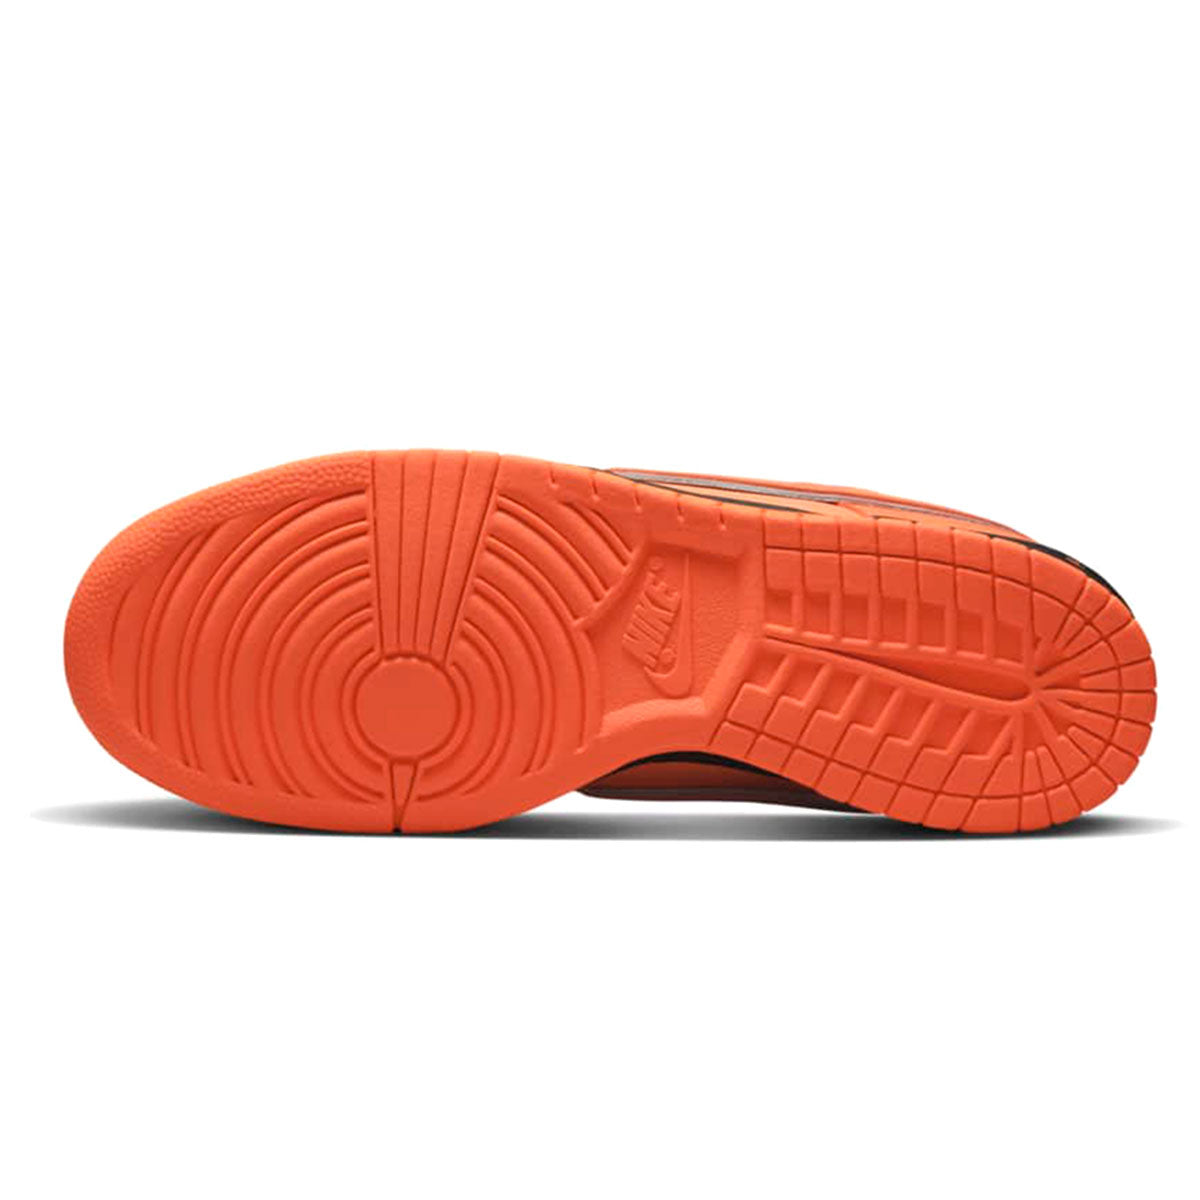 24.0cm】 Concepts × Nike SB Dunk Low SP 